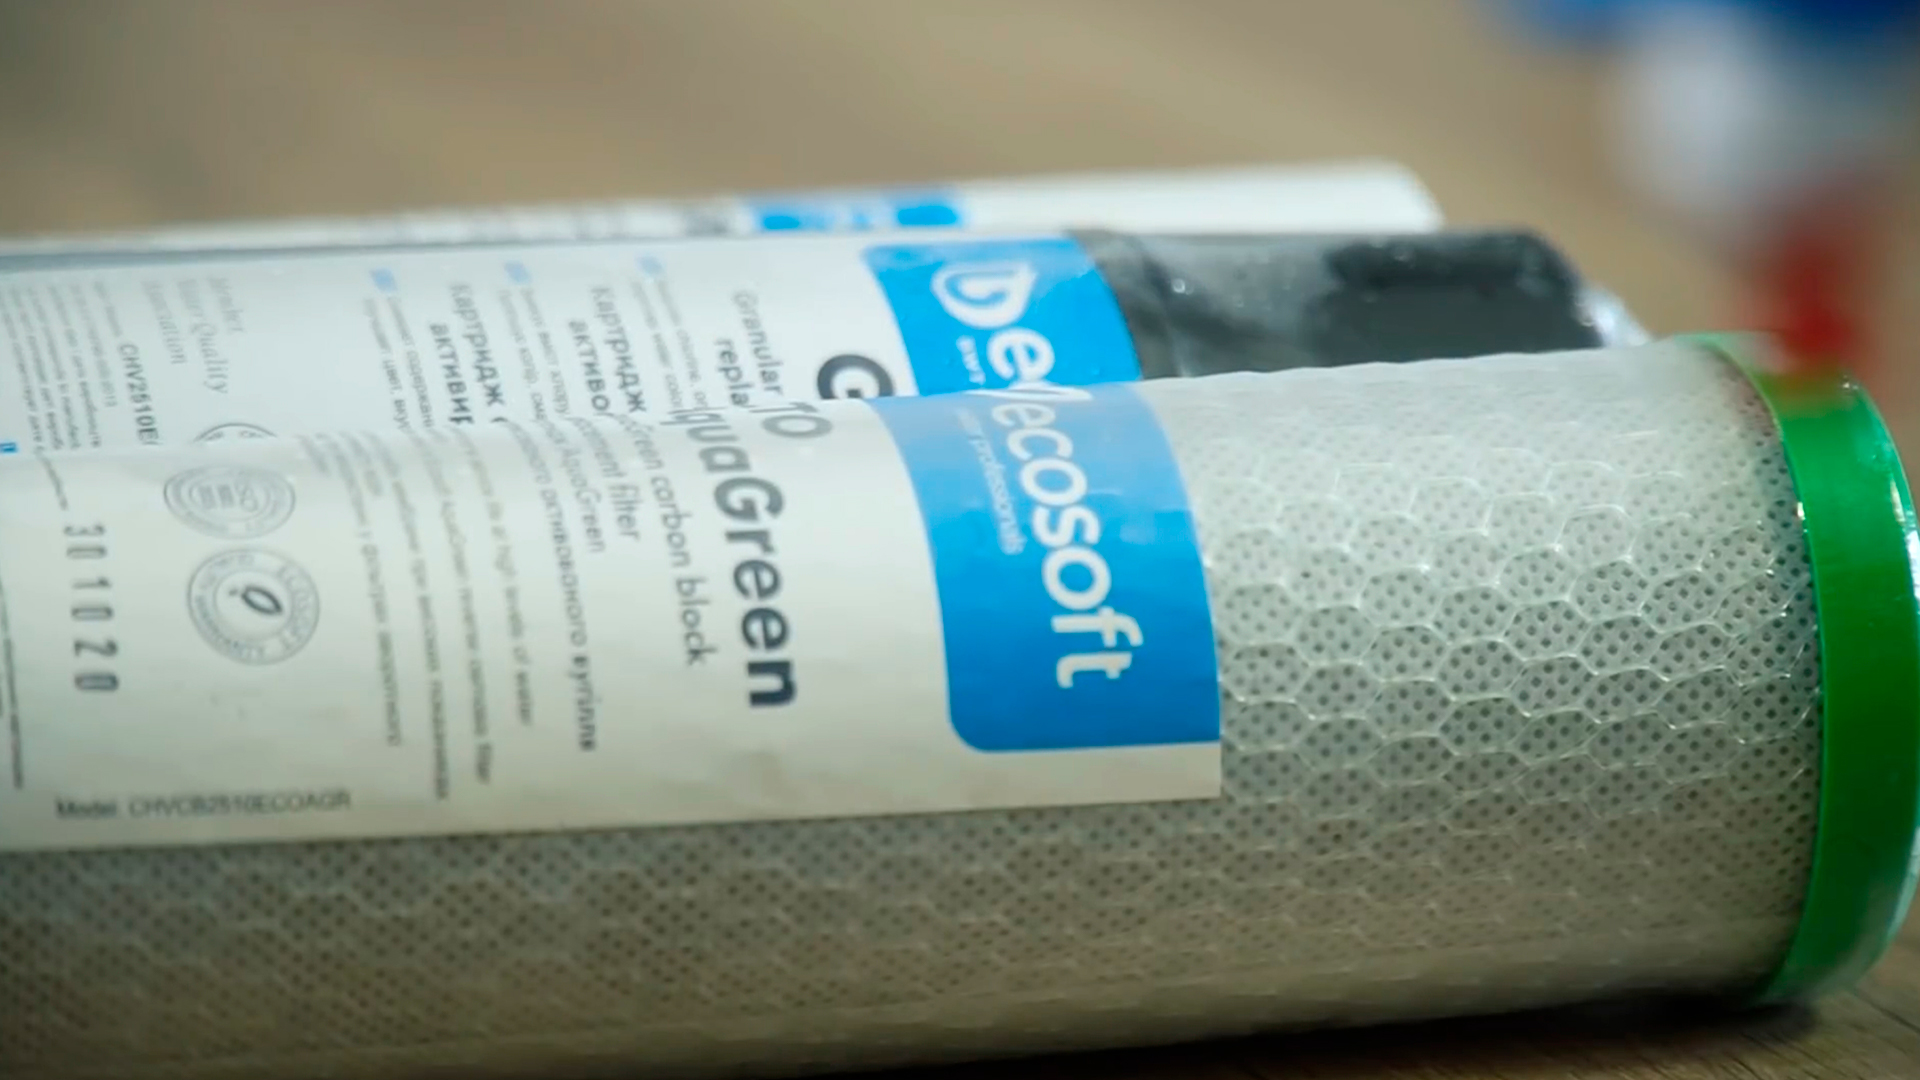 12 літрів чистої води за годину з Ecosoft P’Ure Balance в ЖК Welcome Home